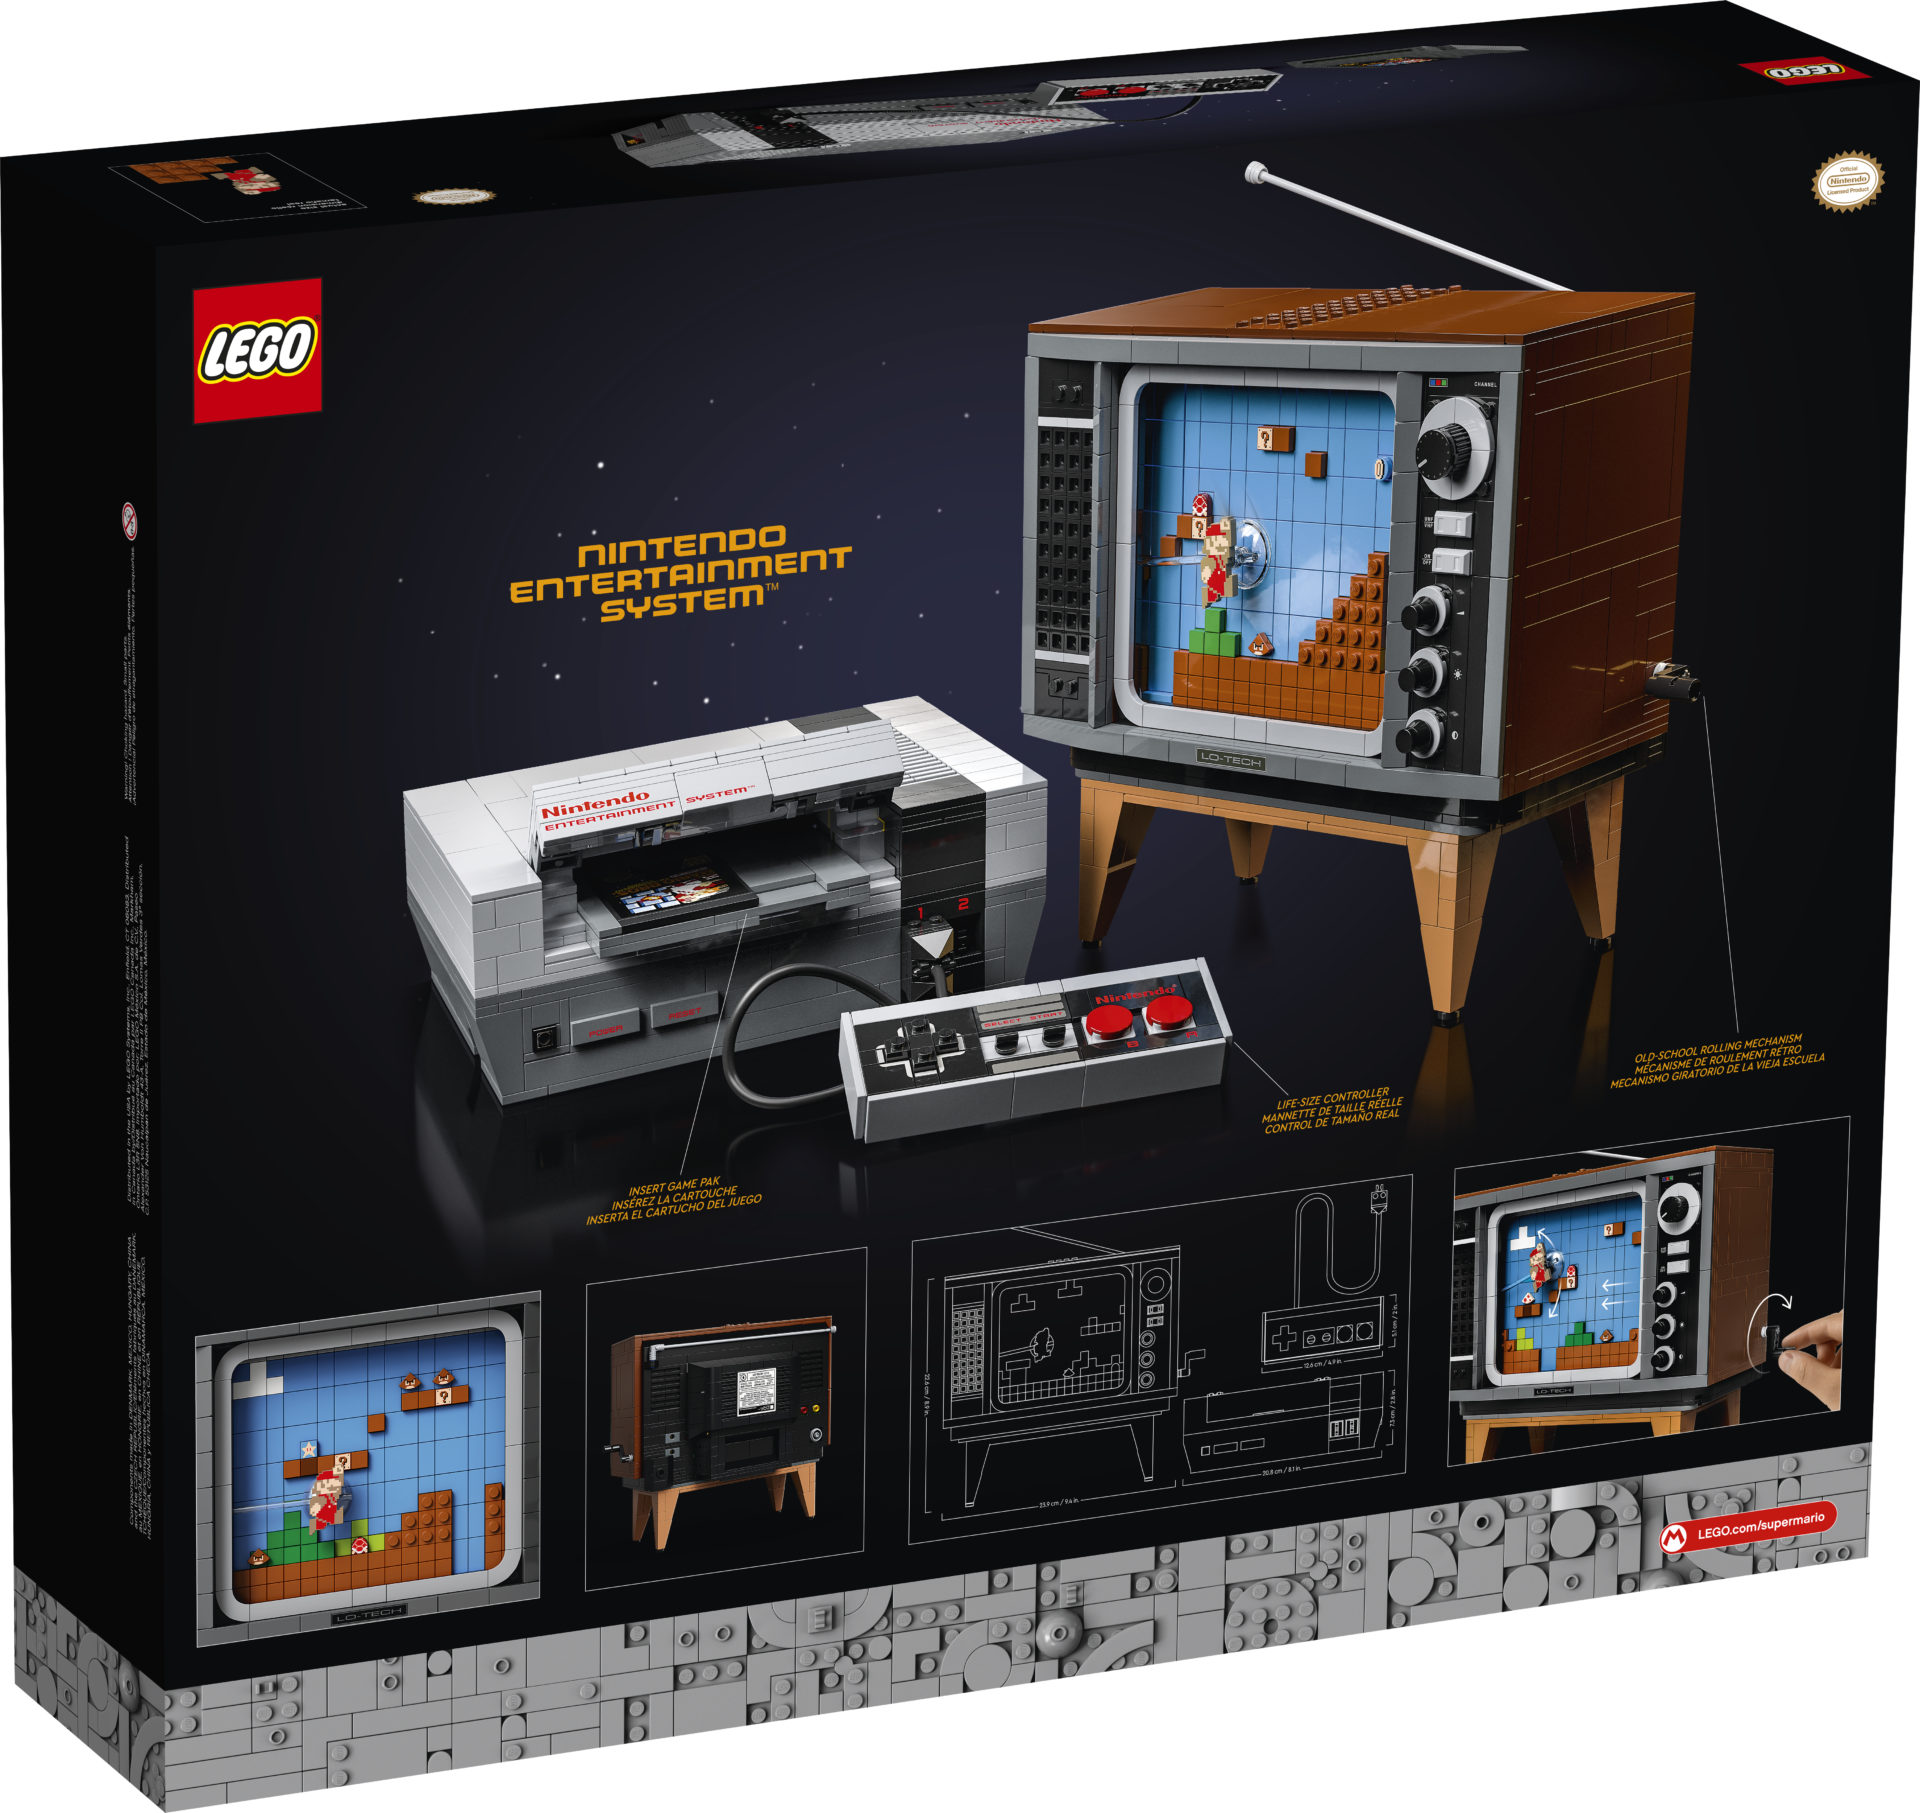 Die LEGO Gruppe stellt das neue Bauset LEGO Nintendo Entertainment System vor